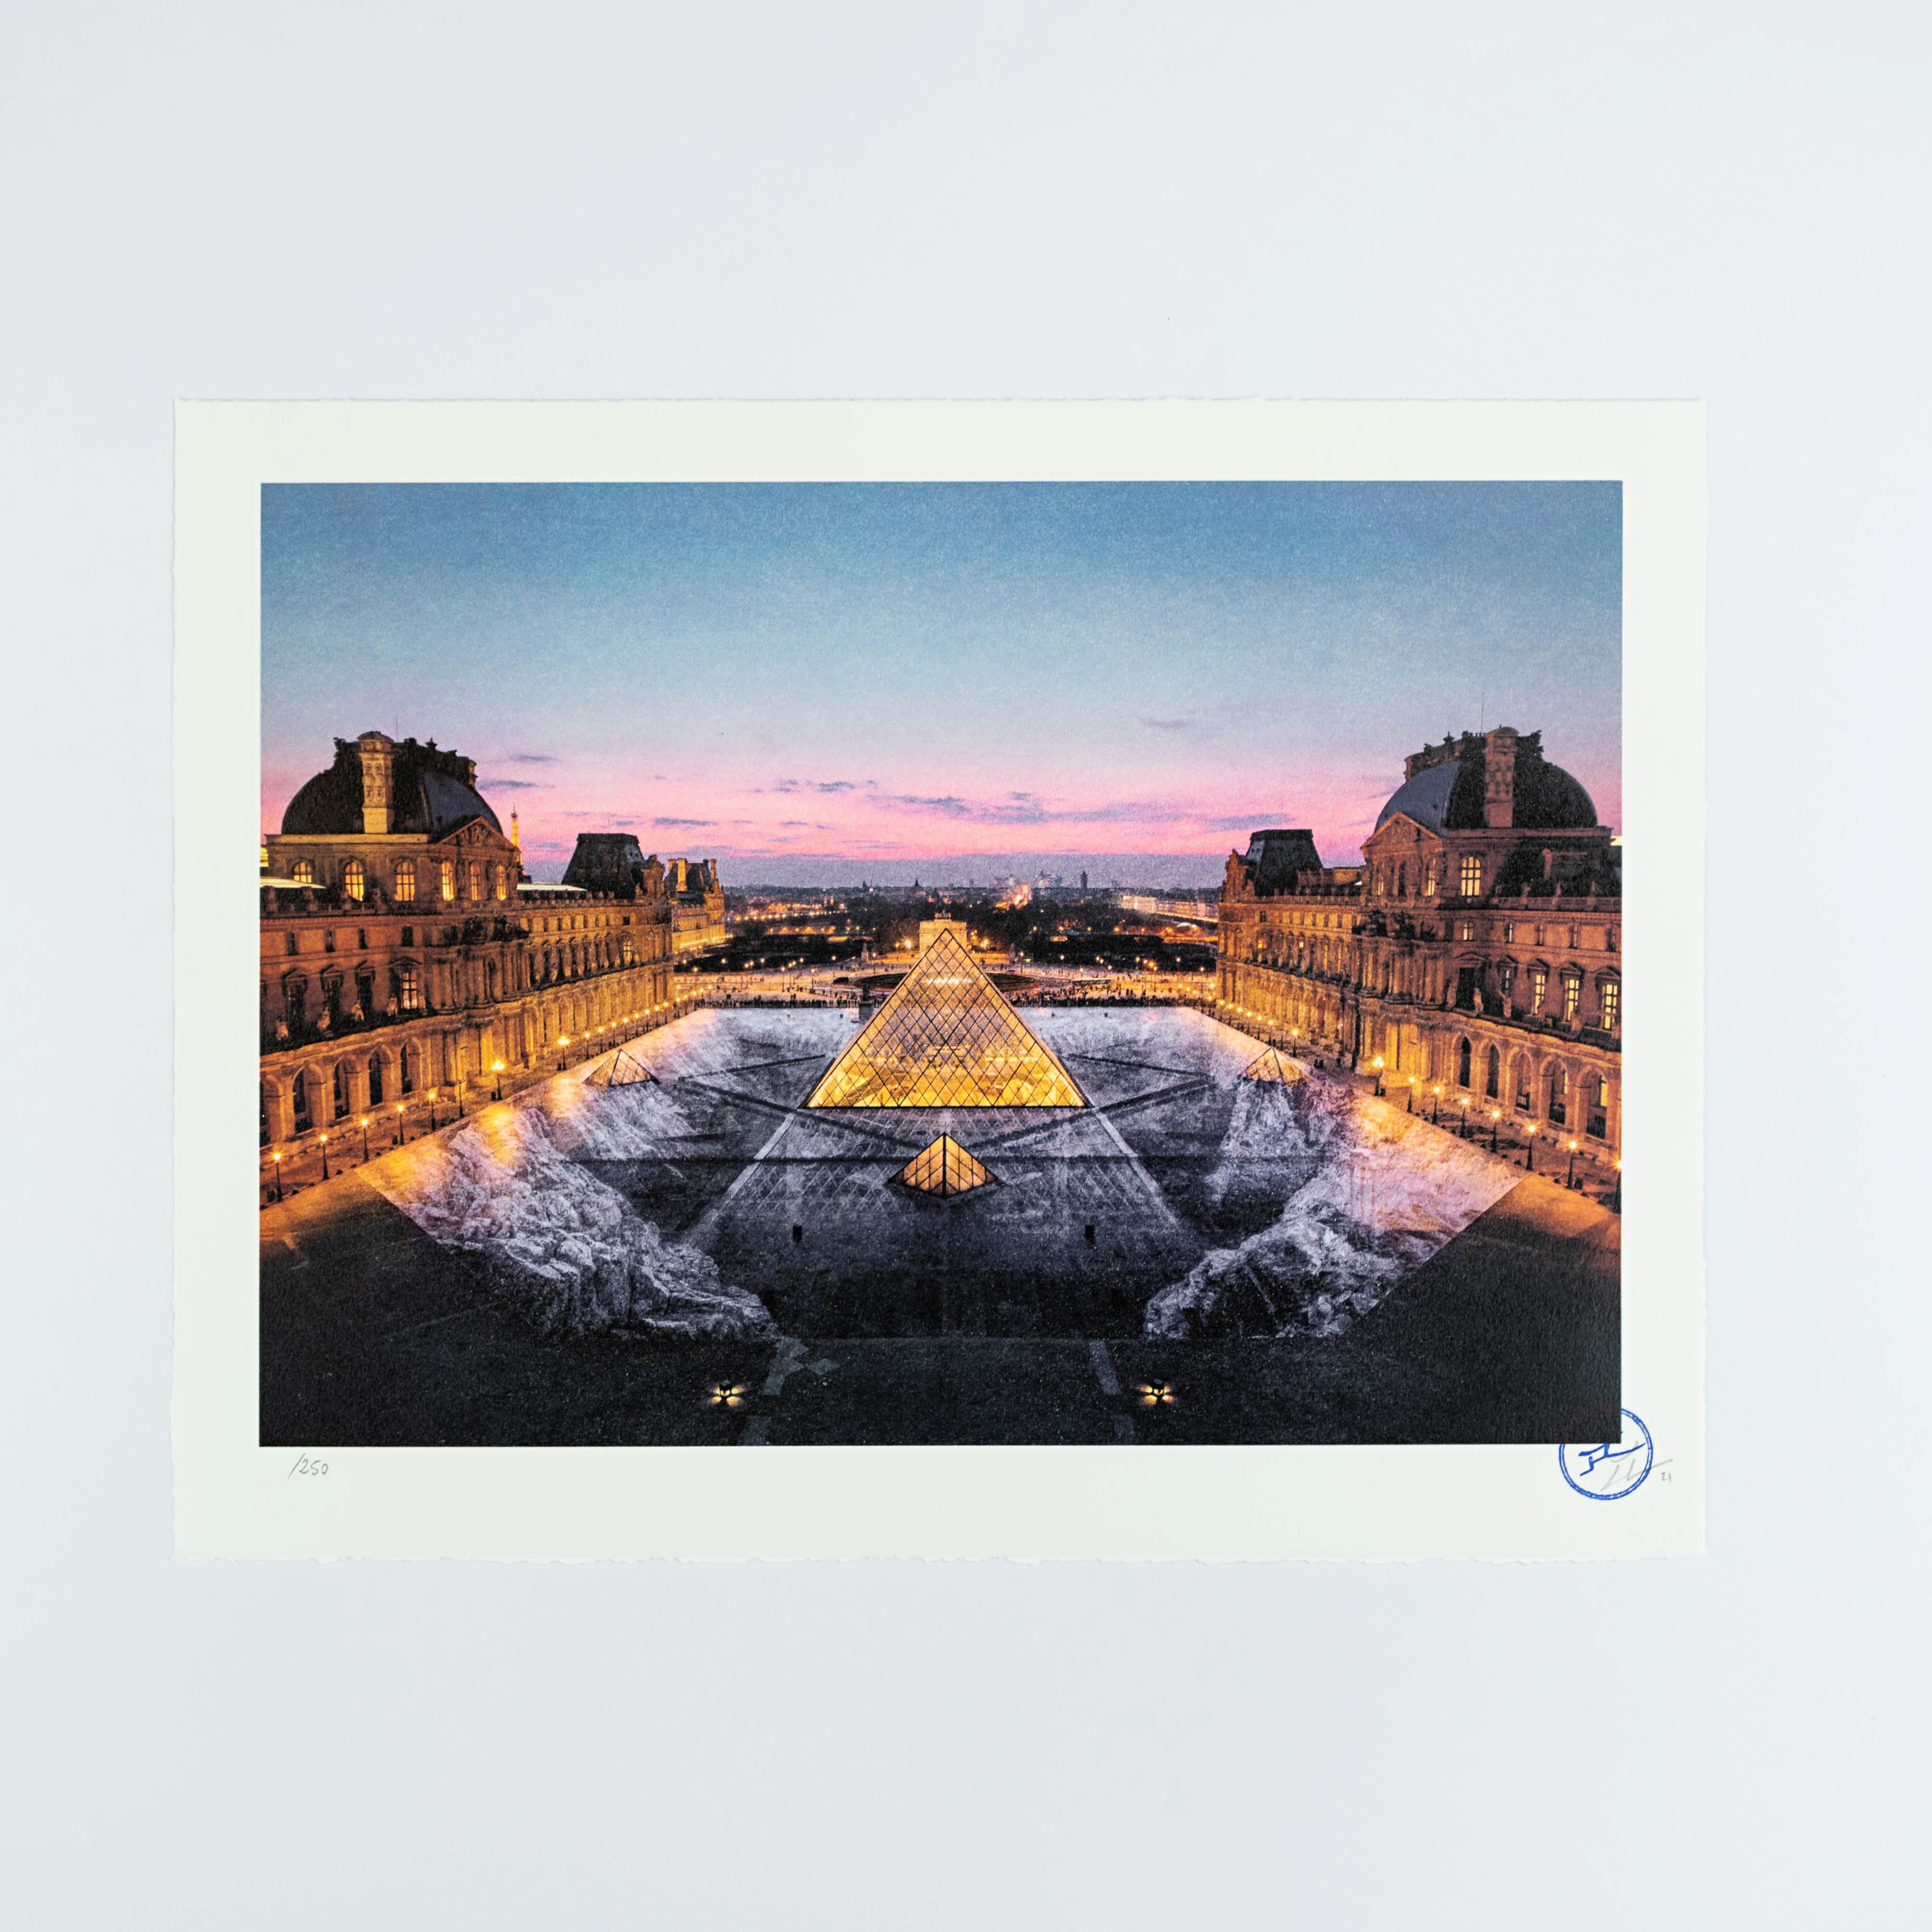 JR au Louvre, 29 Mars 2019, 19H45 Pyramide, Architecte I. M. Pei, Musee Du Lou - Print by J.R. 